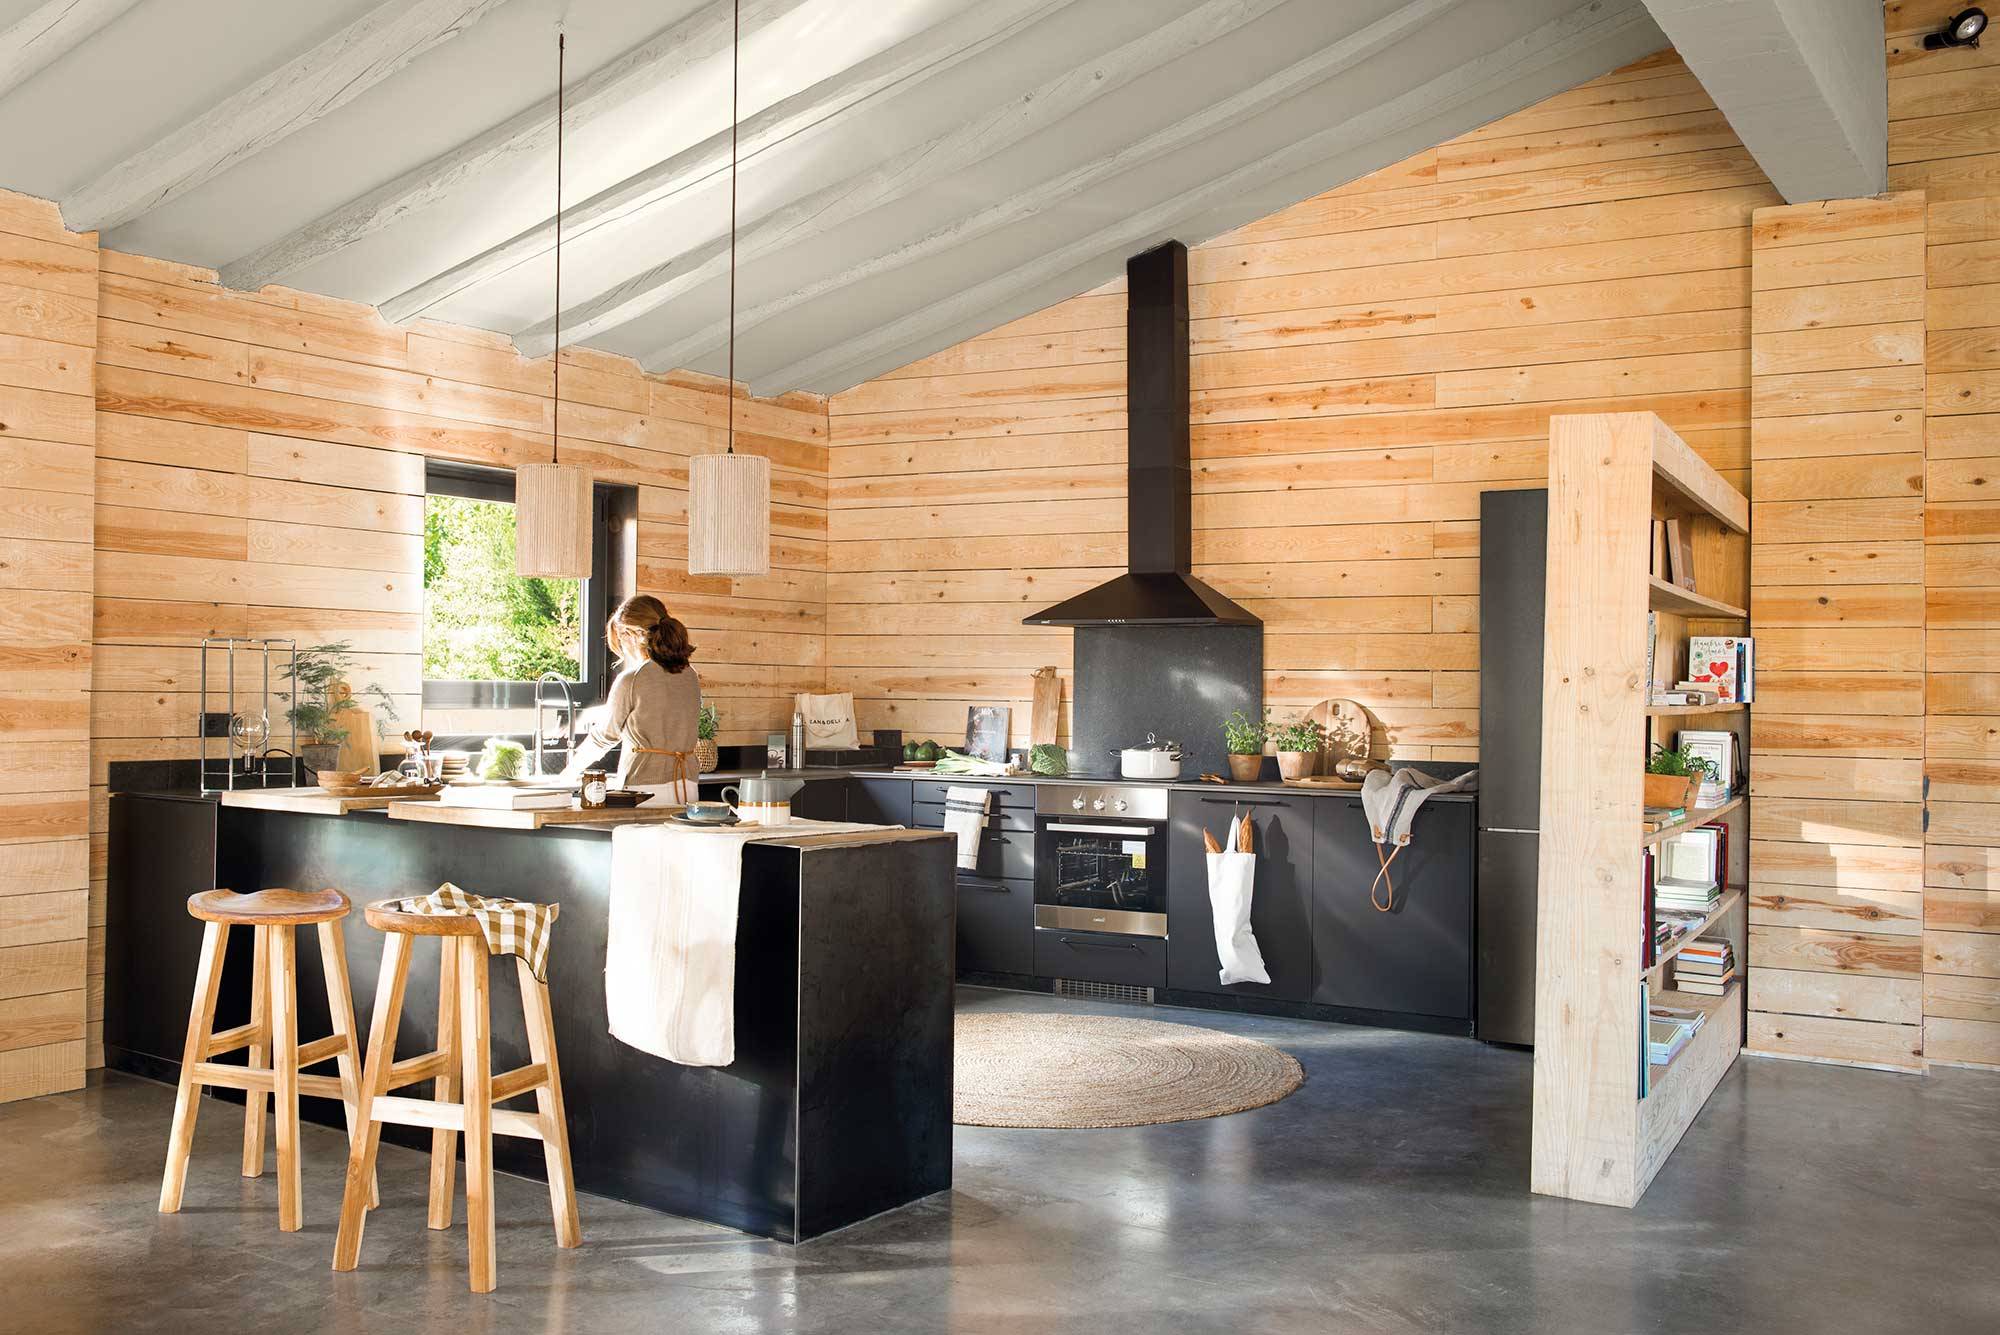 Cocina con paredes de madera y look industrial con muebles en negro 00513574